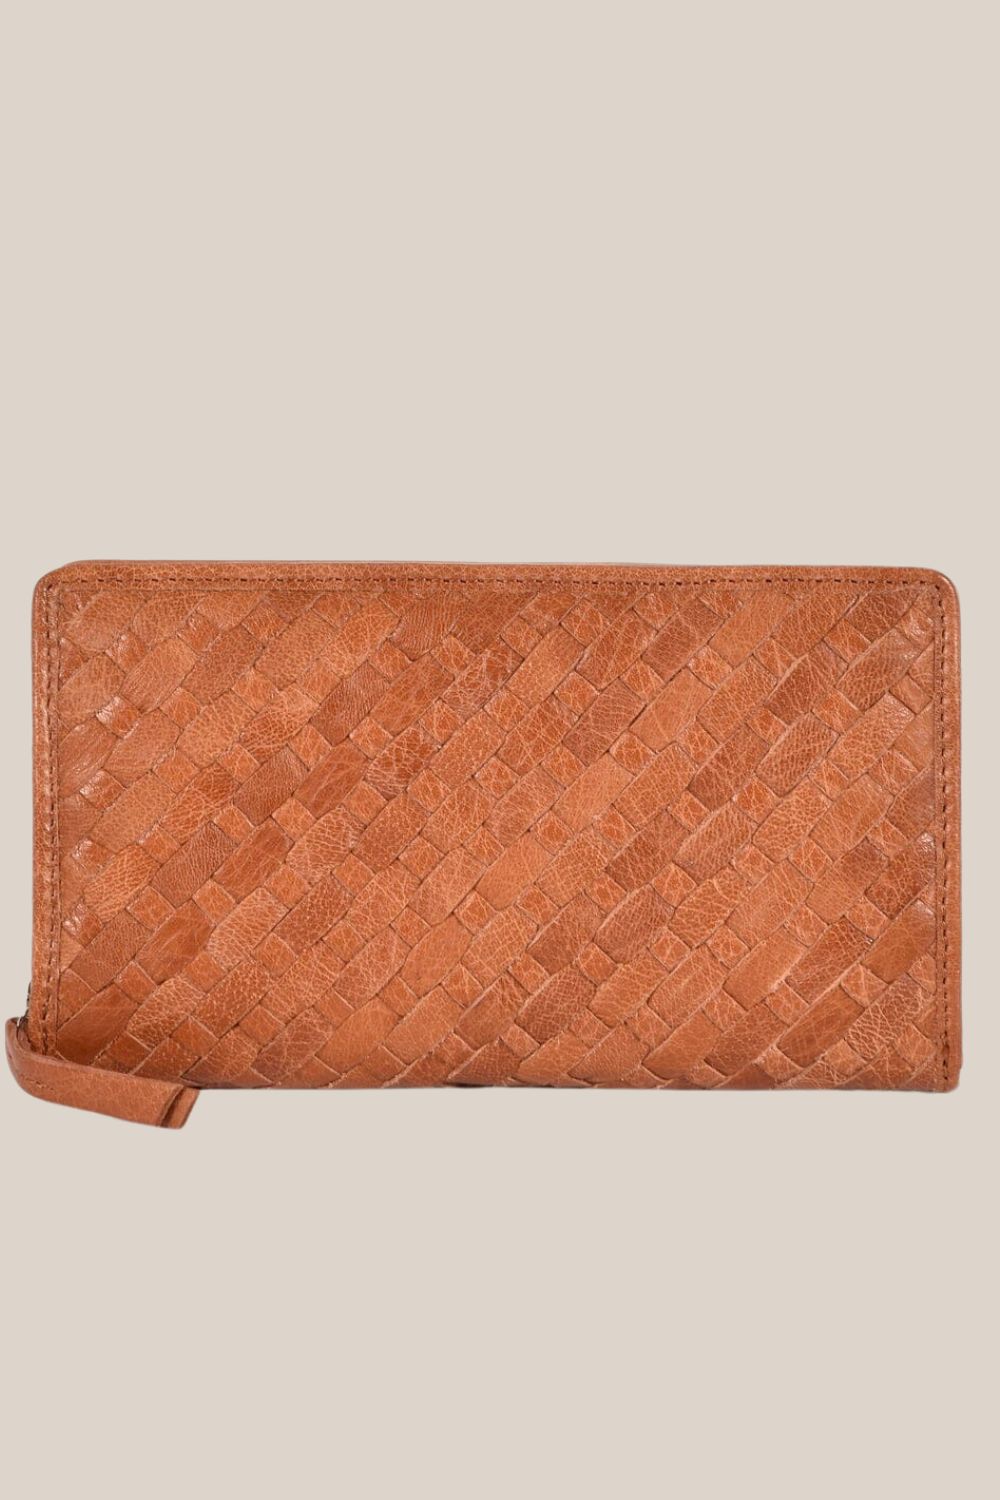 Cobb & Co Deakin Leather Woven Wallet